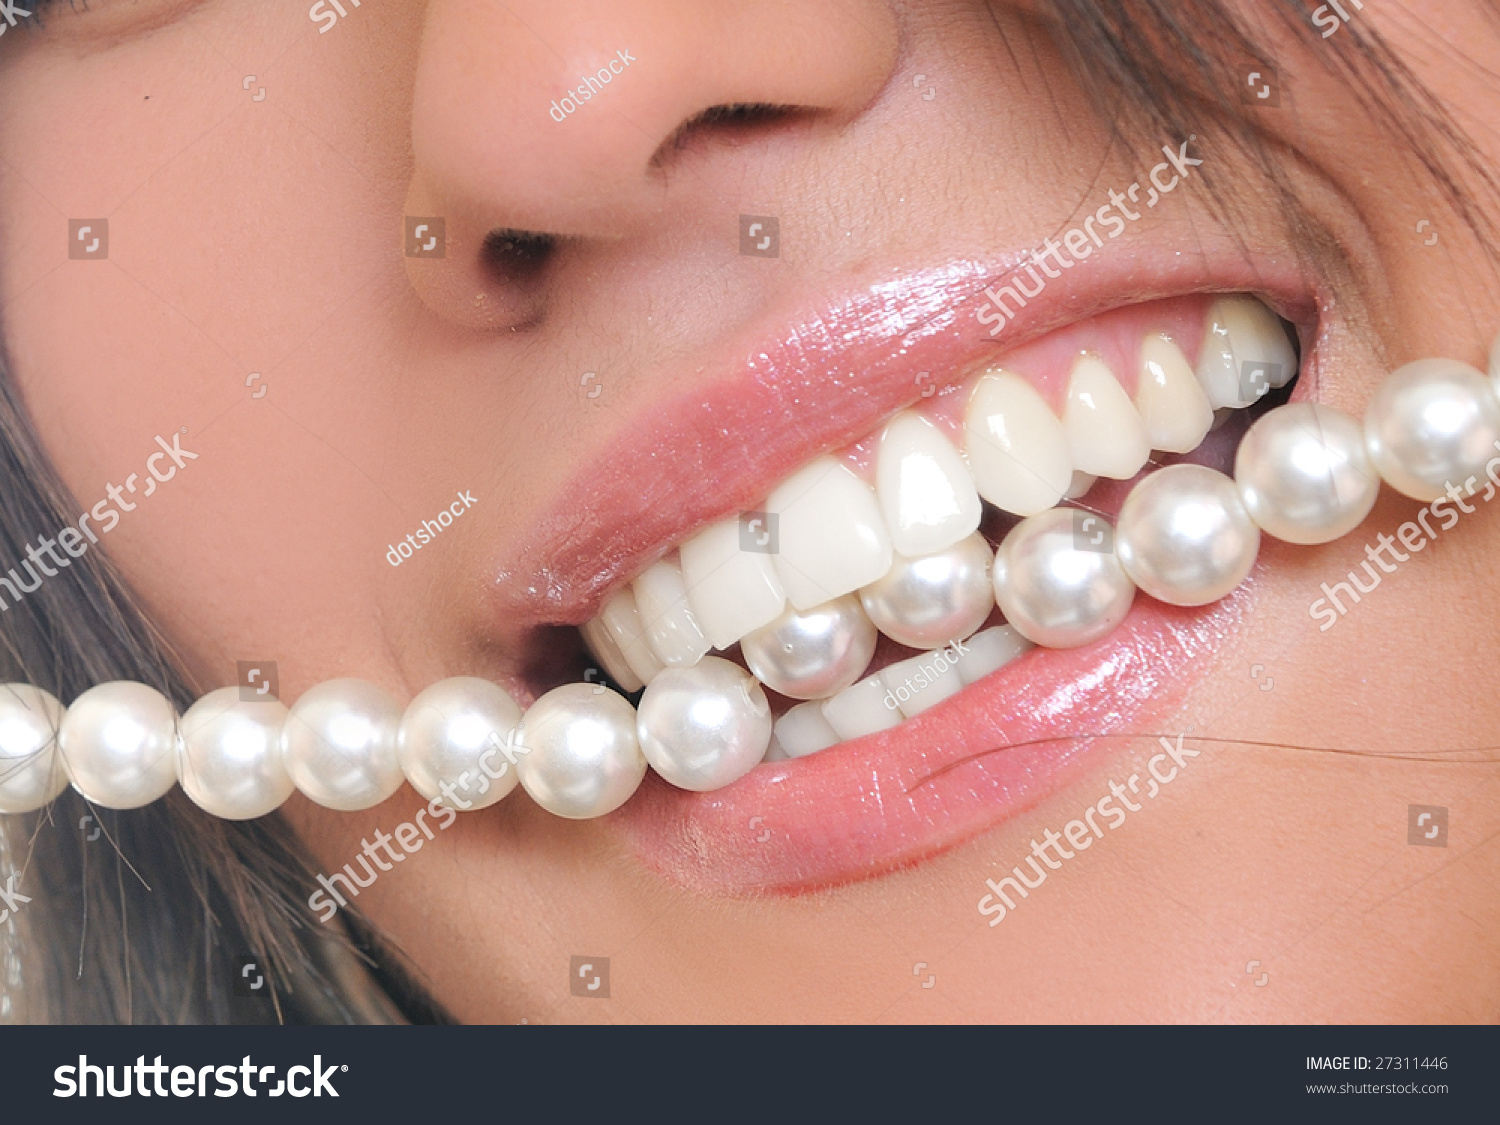 Жемчужные зубы